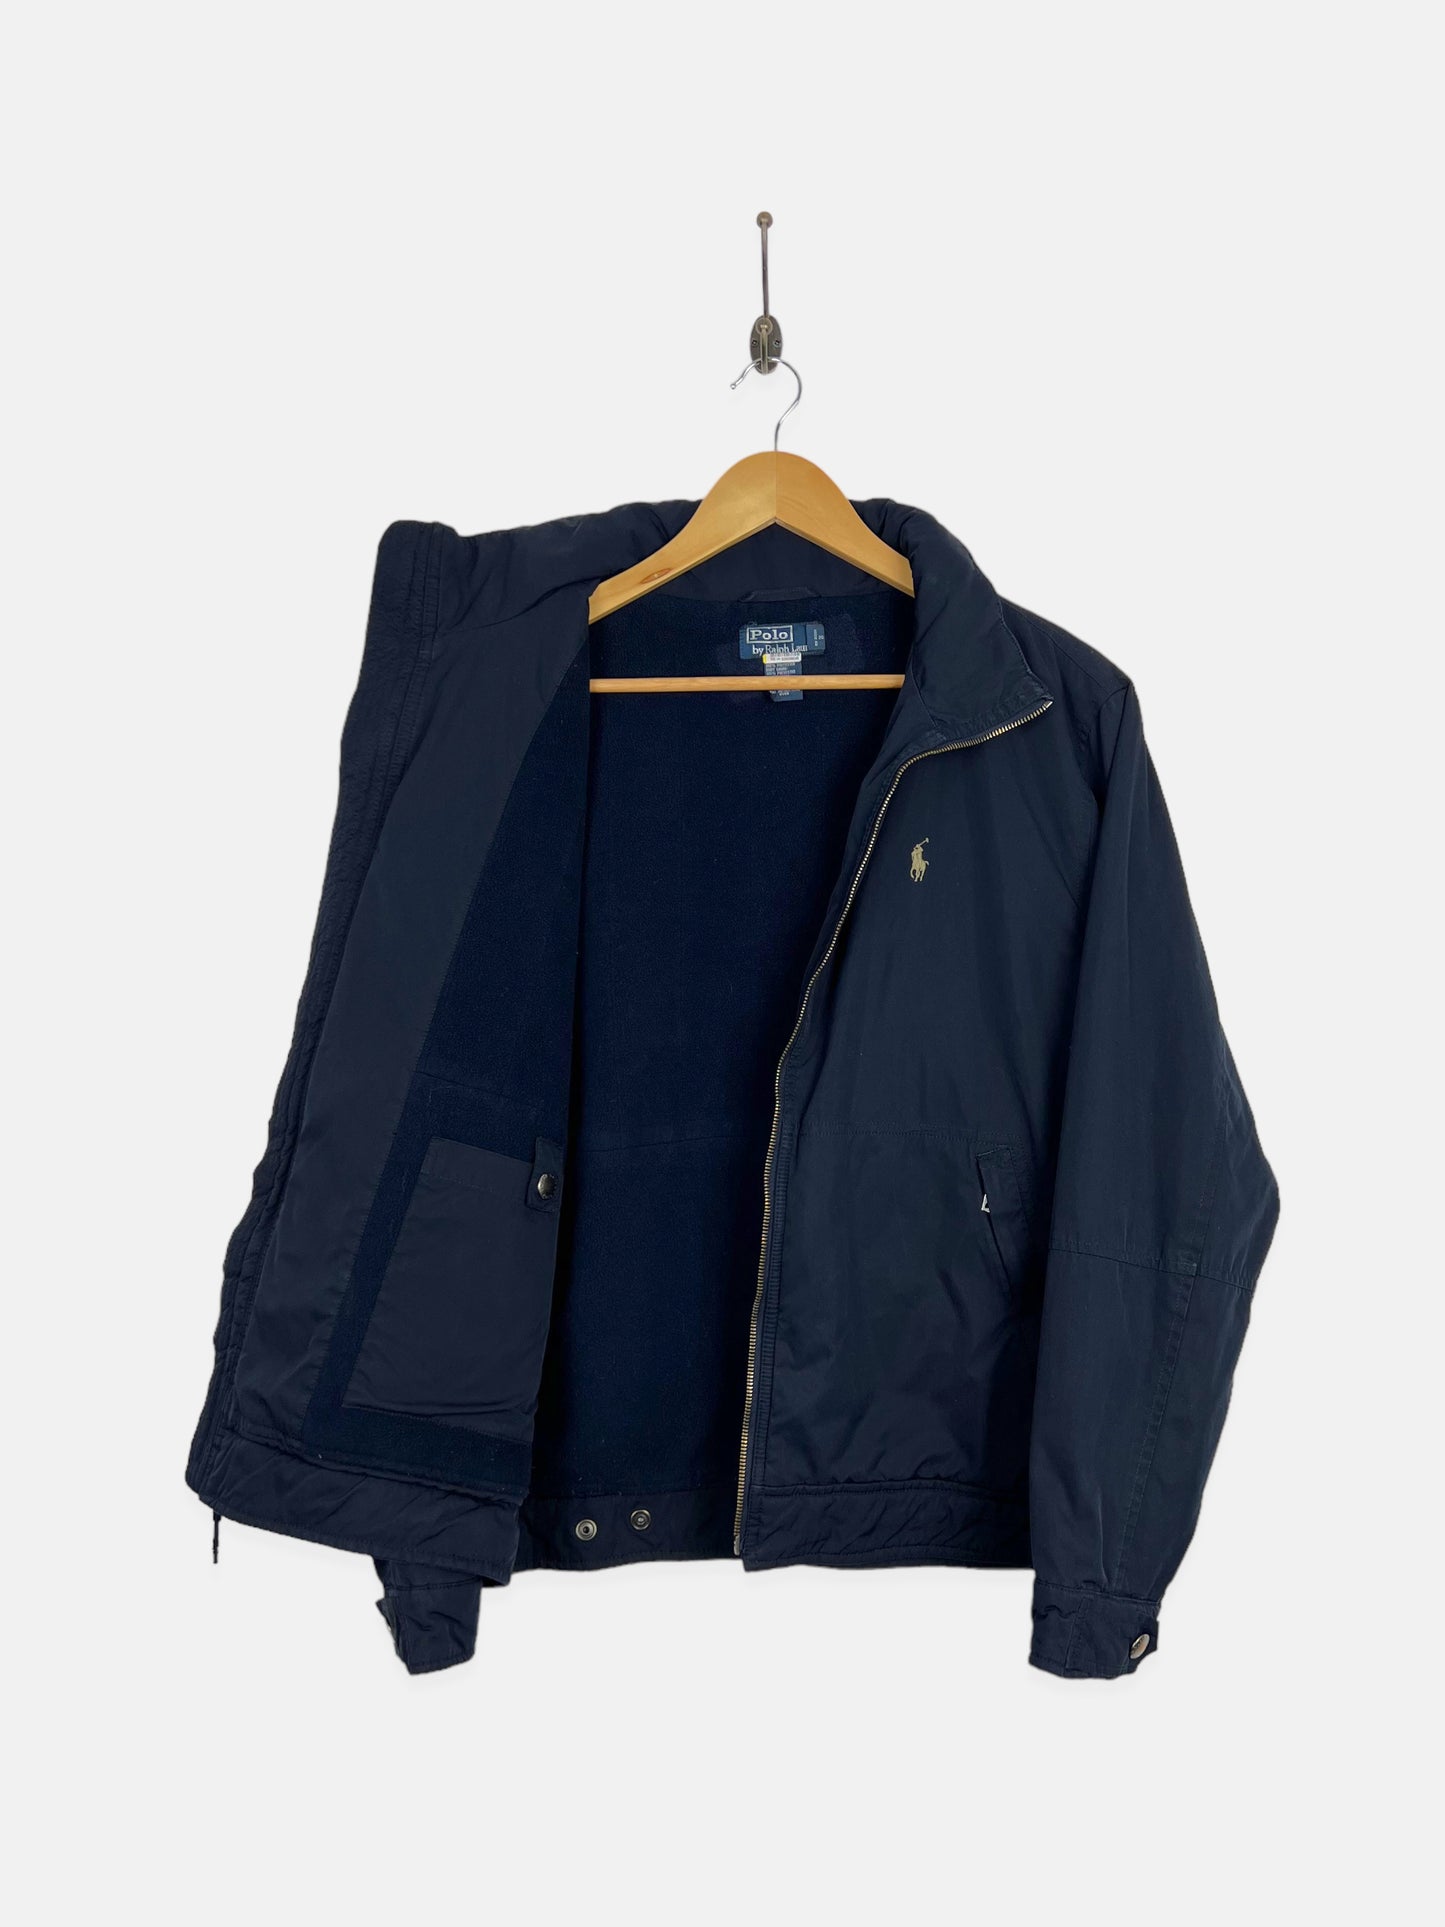 90's Ralph Lauren Fleece Lined Embroidered Jacket Size 10-12